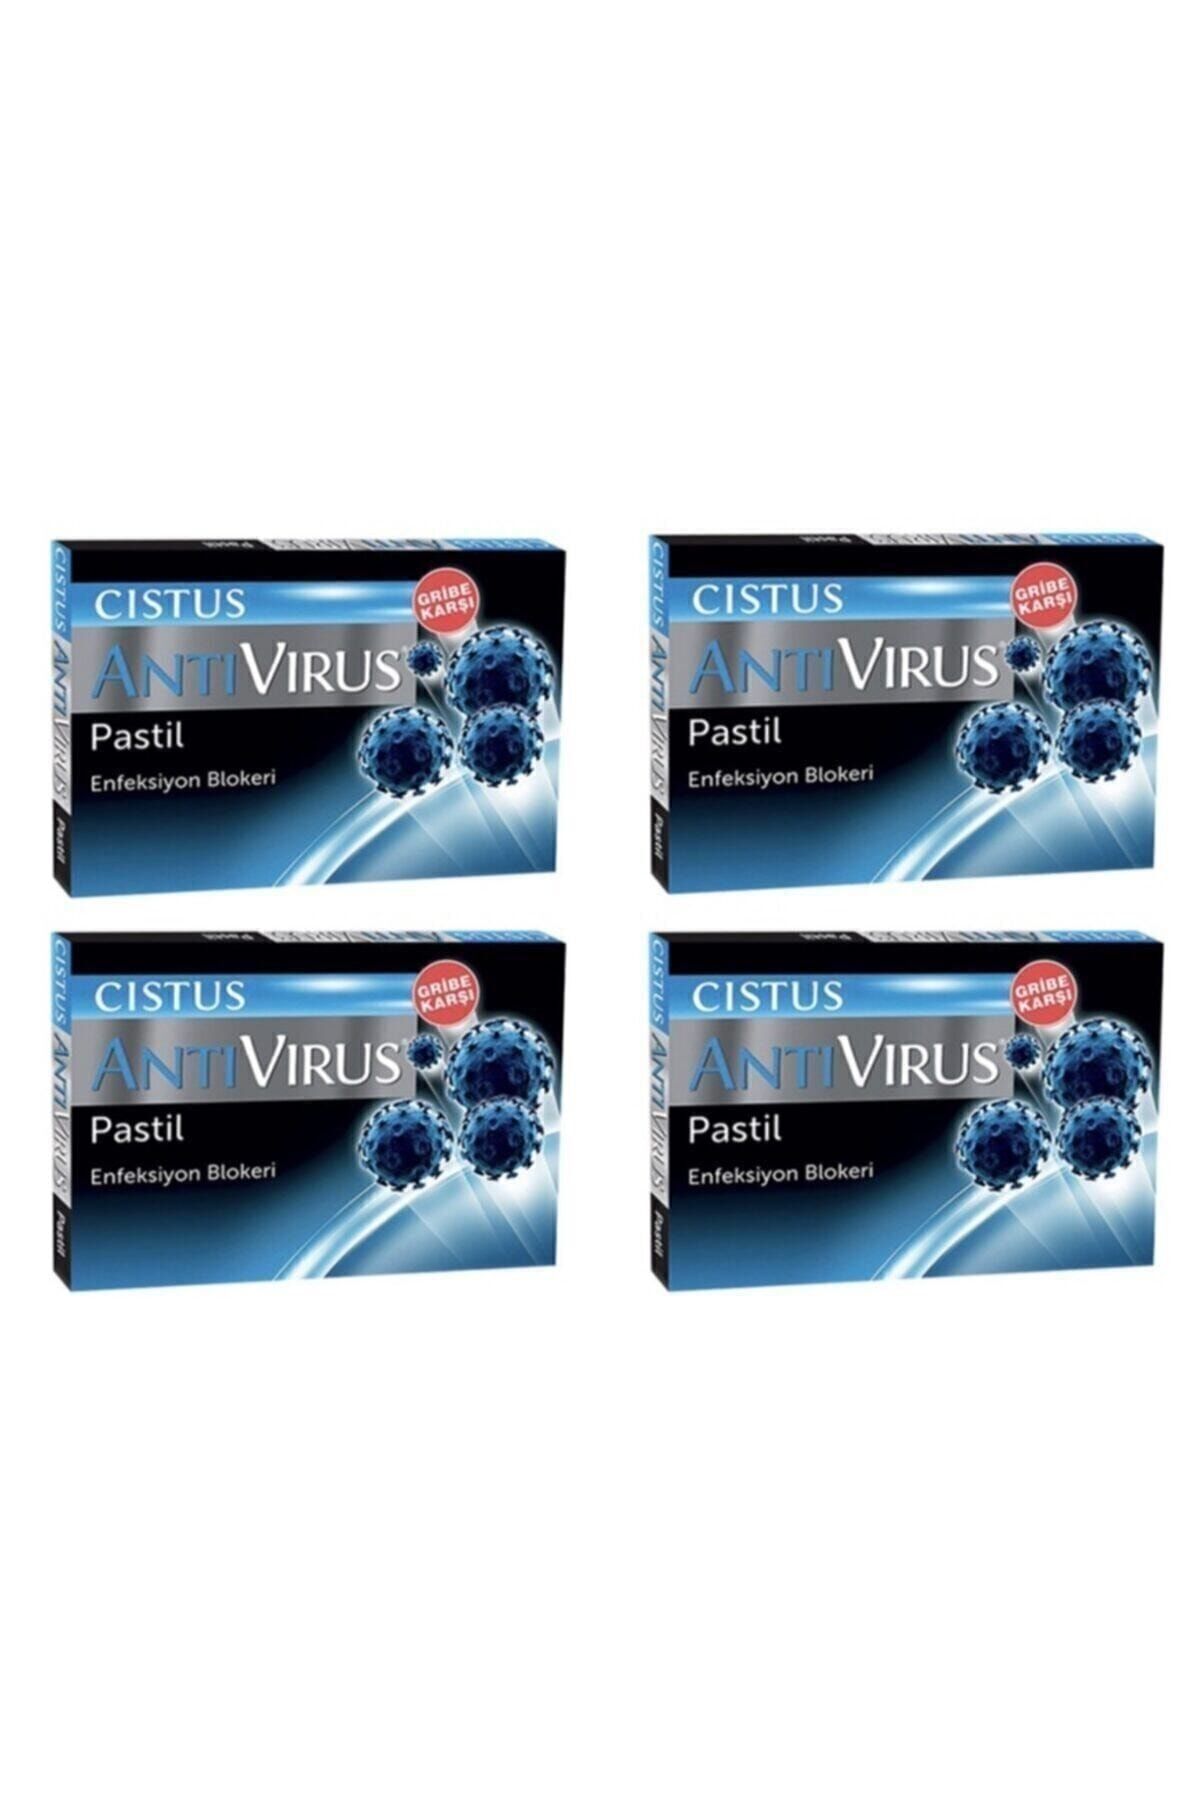 CISTUS Antivirus Pastil 4 Adet pastil3